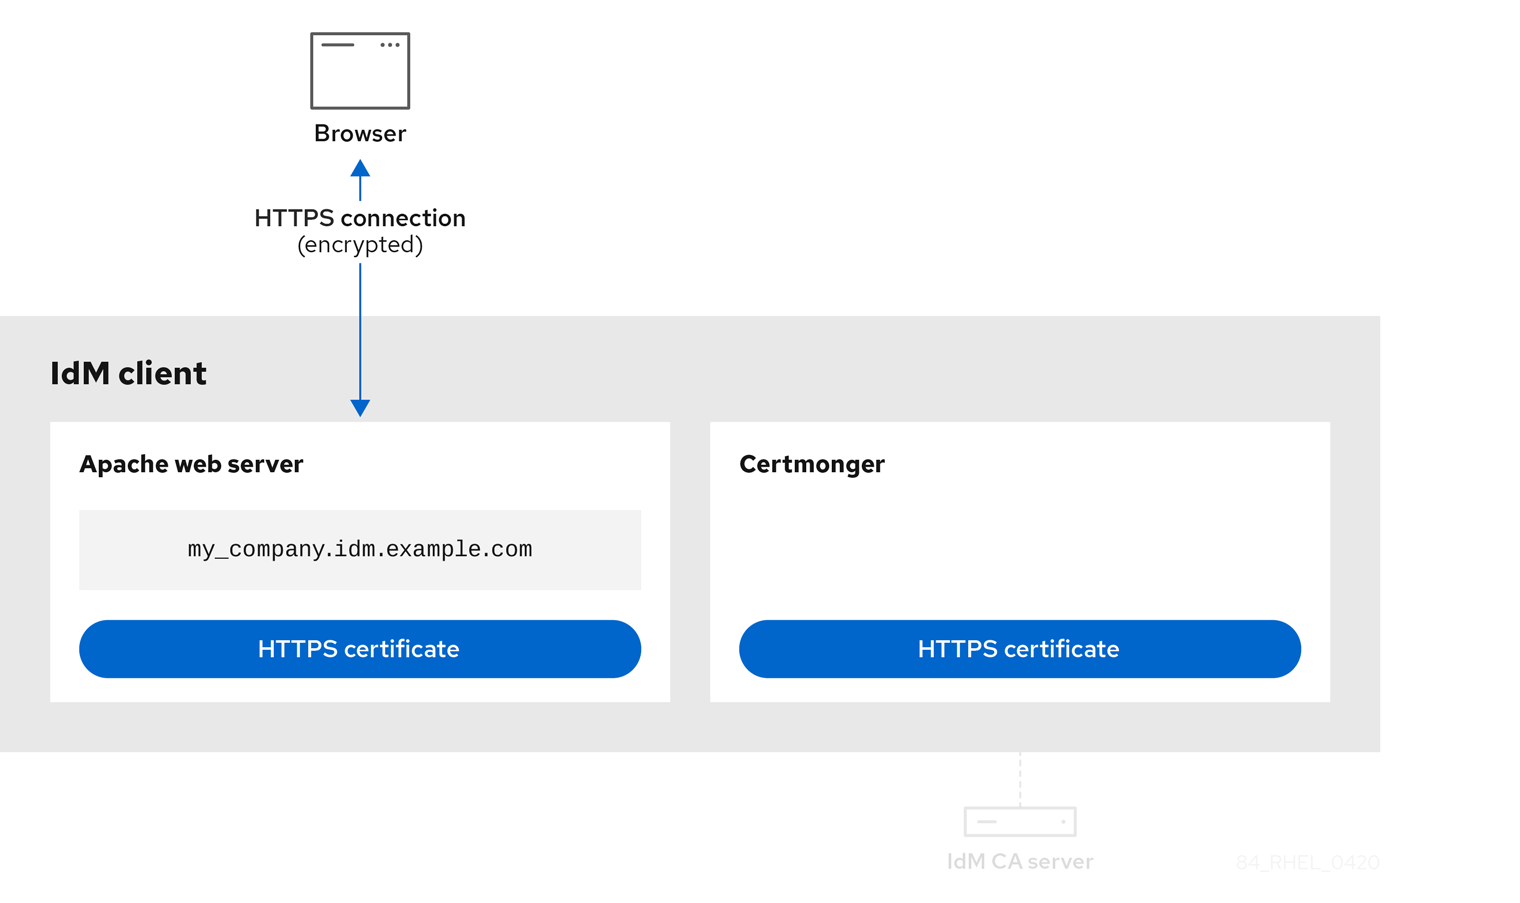 HTTPS 証明書が Apache Web サーバーに割り当てられているイメージと、certmonger サービスに割り当てられているイメージを示す図。ブラウザーと Apache Web サーバーの間には、暗号化されている HTTPS 接続でつながっていることを示す矢印があります。certmonger サービスと IdM CA サーバー間の接続はアクティブではありません。